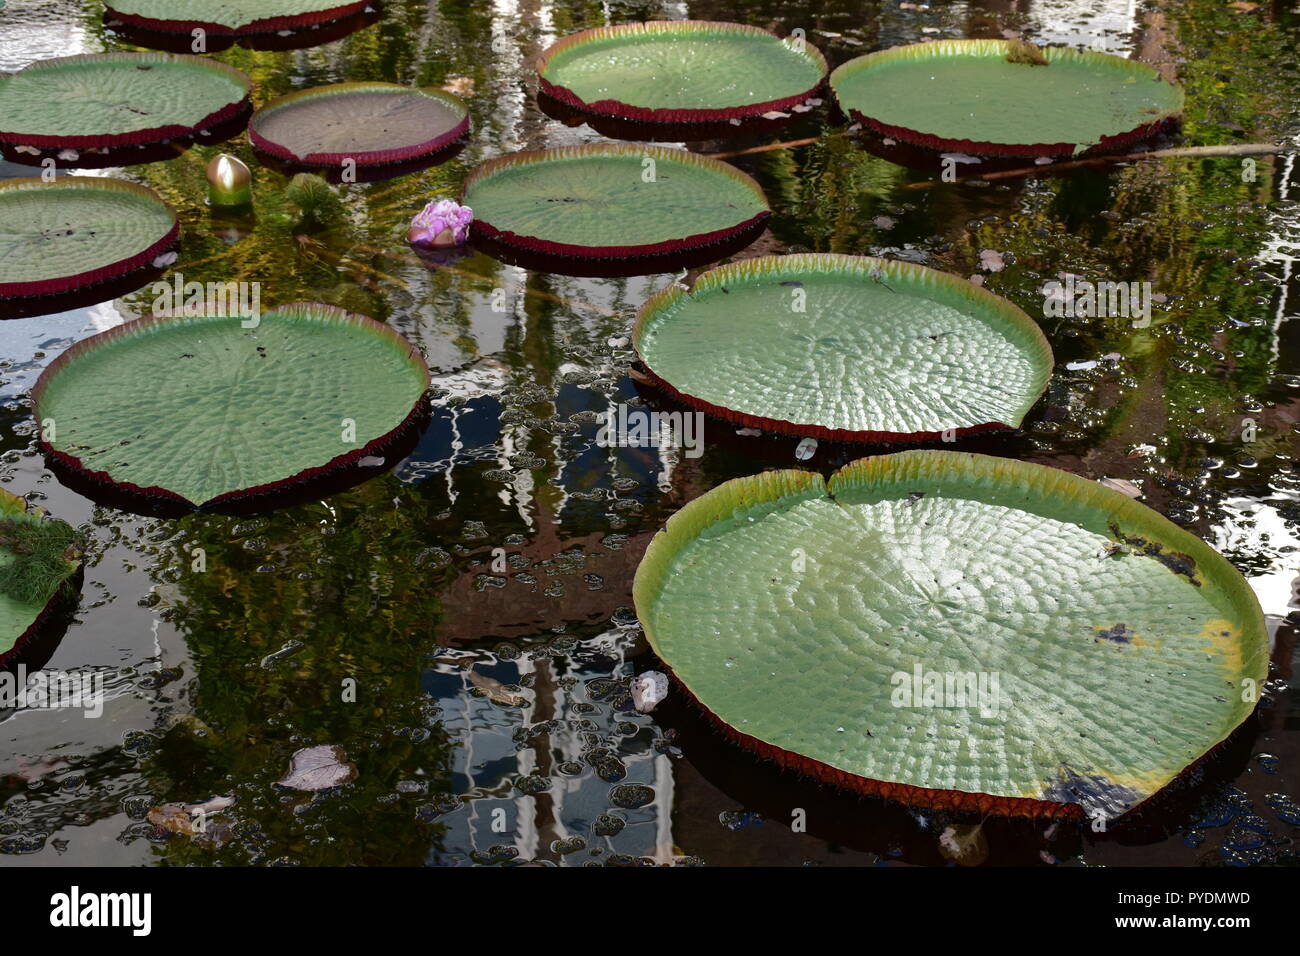 Lillie pond/ lilly pond Stock Photo